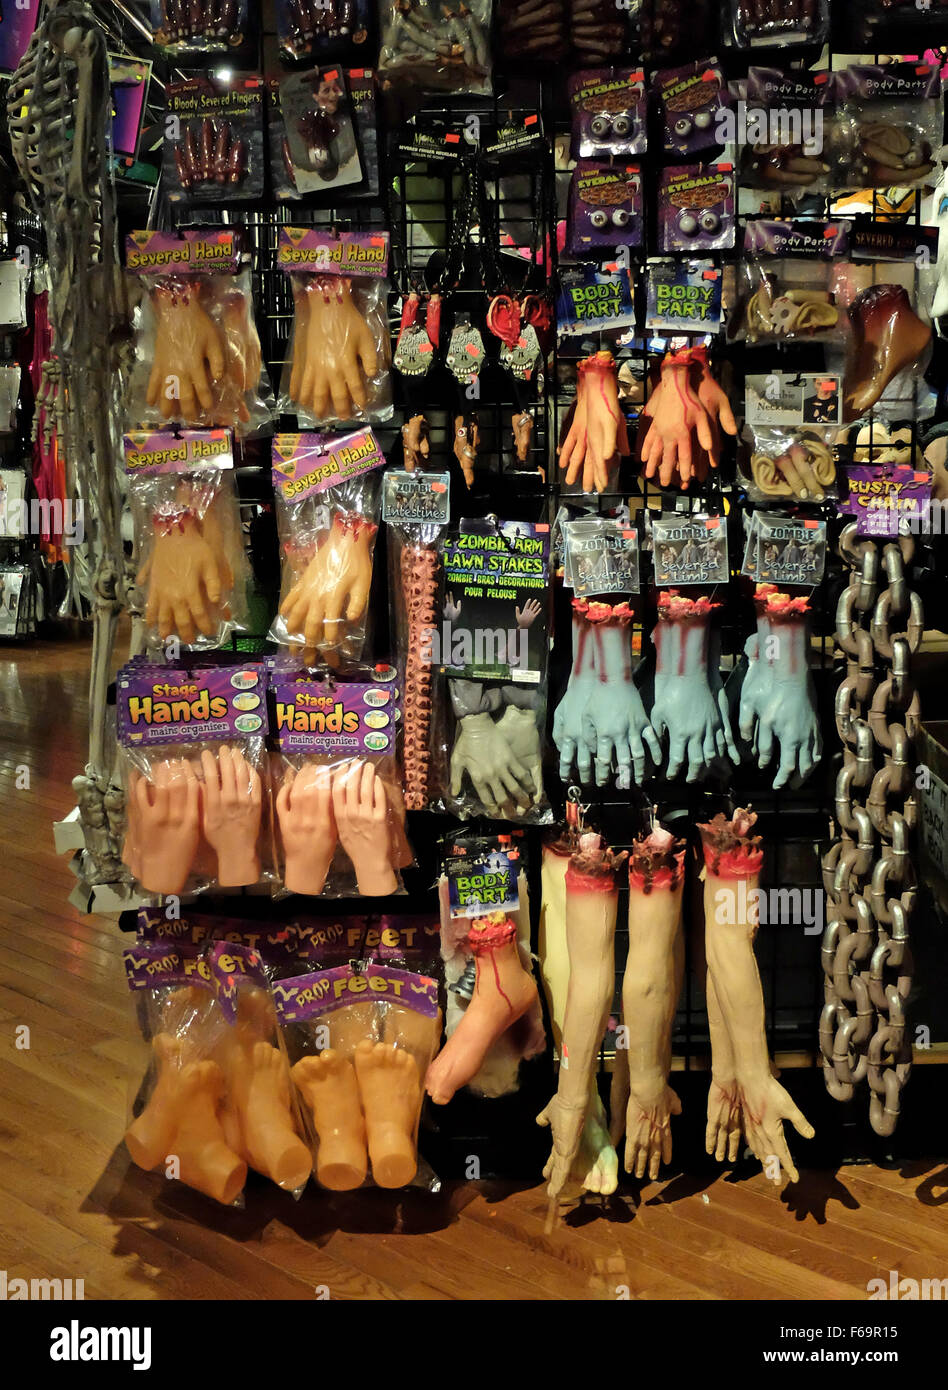 Körper Teil Kostüme zum Verkauf an ein großes Kostüm speichern in Greenwich Village, NYC, genannt das Halloween-Abenteuer. Stockfoto